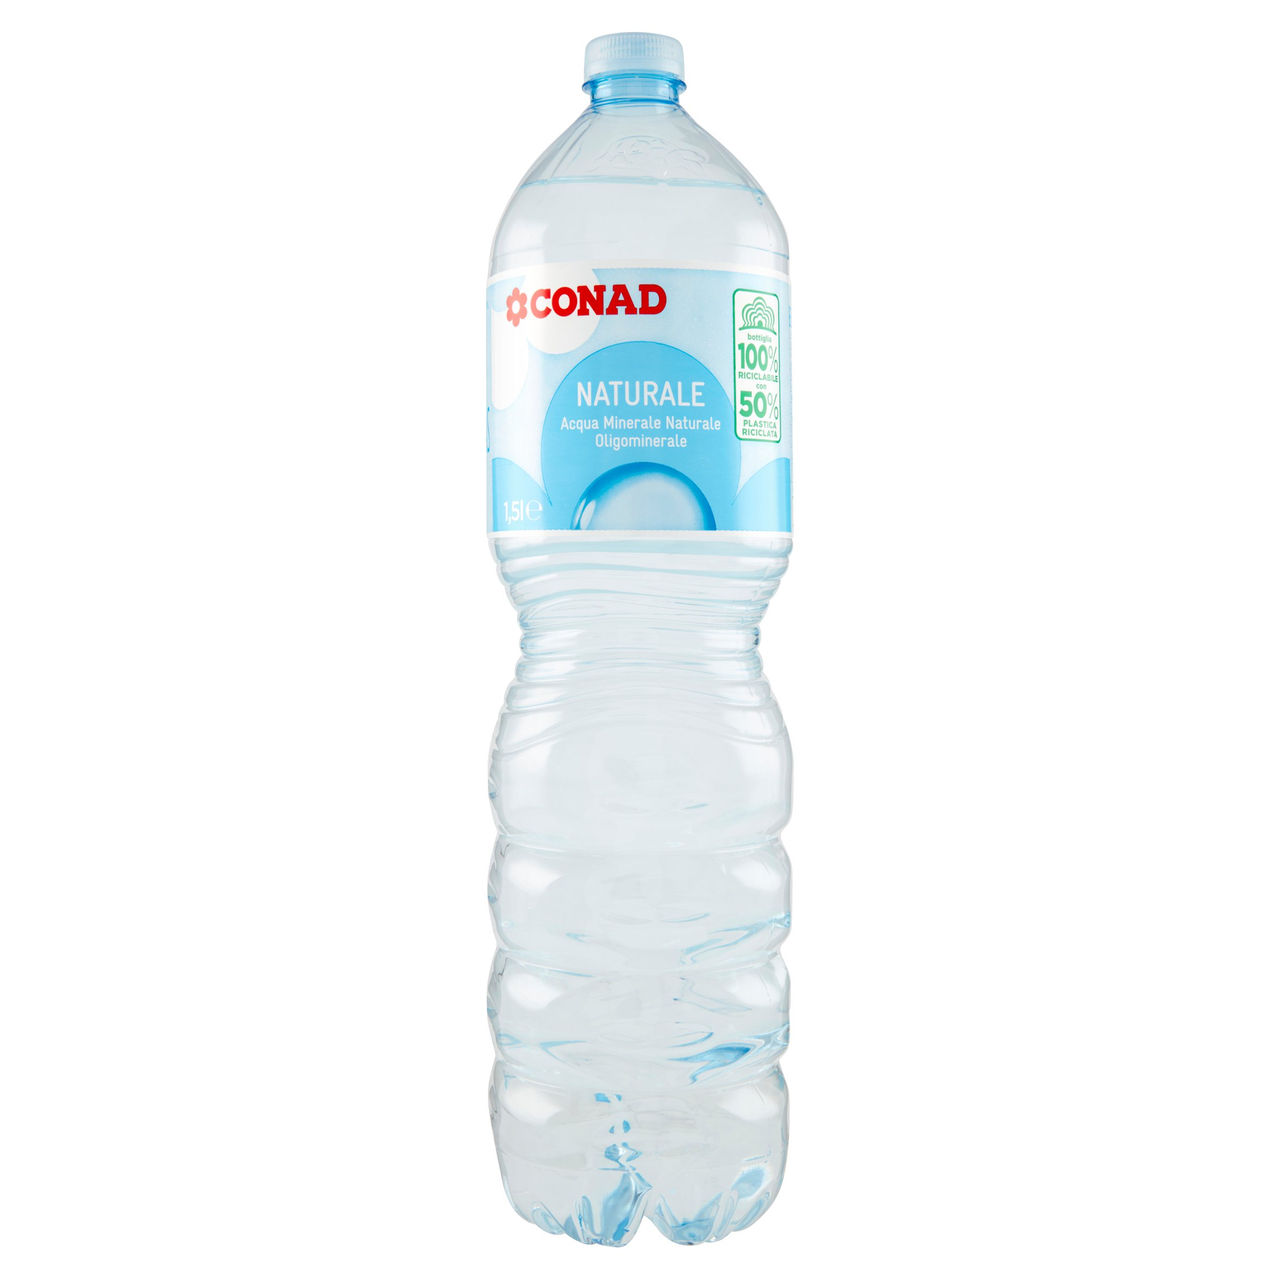 CONAD Naturale Acqua Minerale Naturale Oligominerale Levia 1,5 l